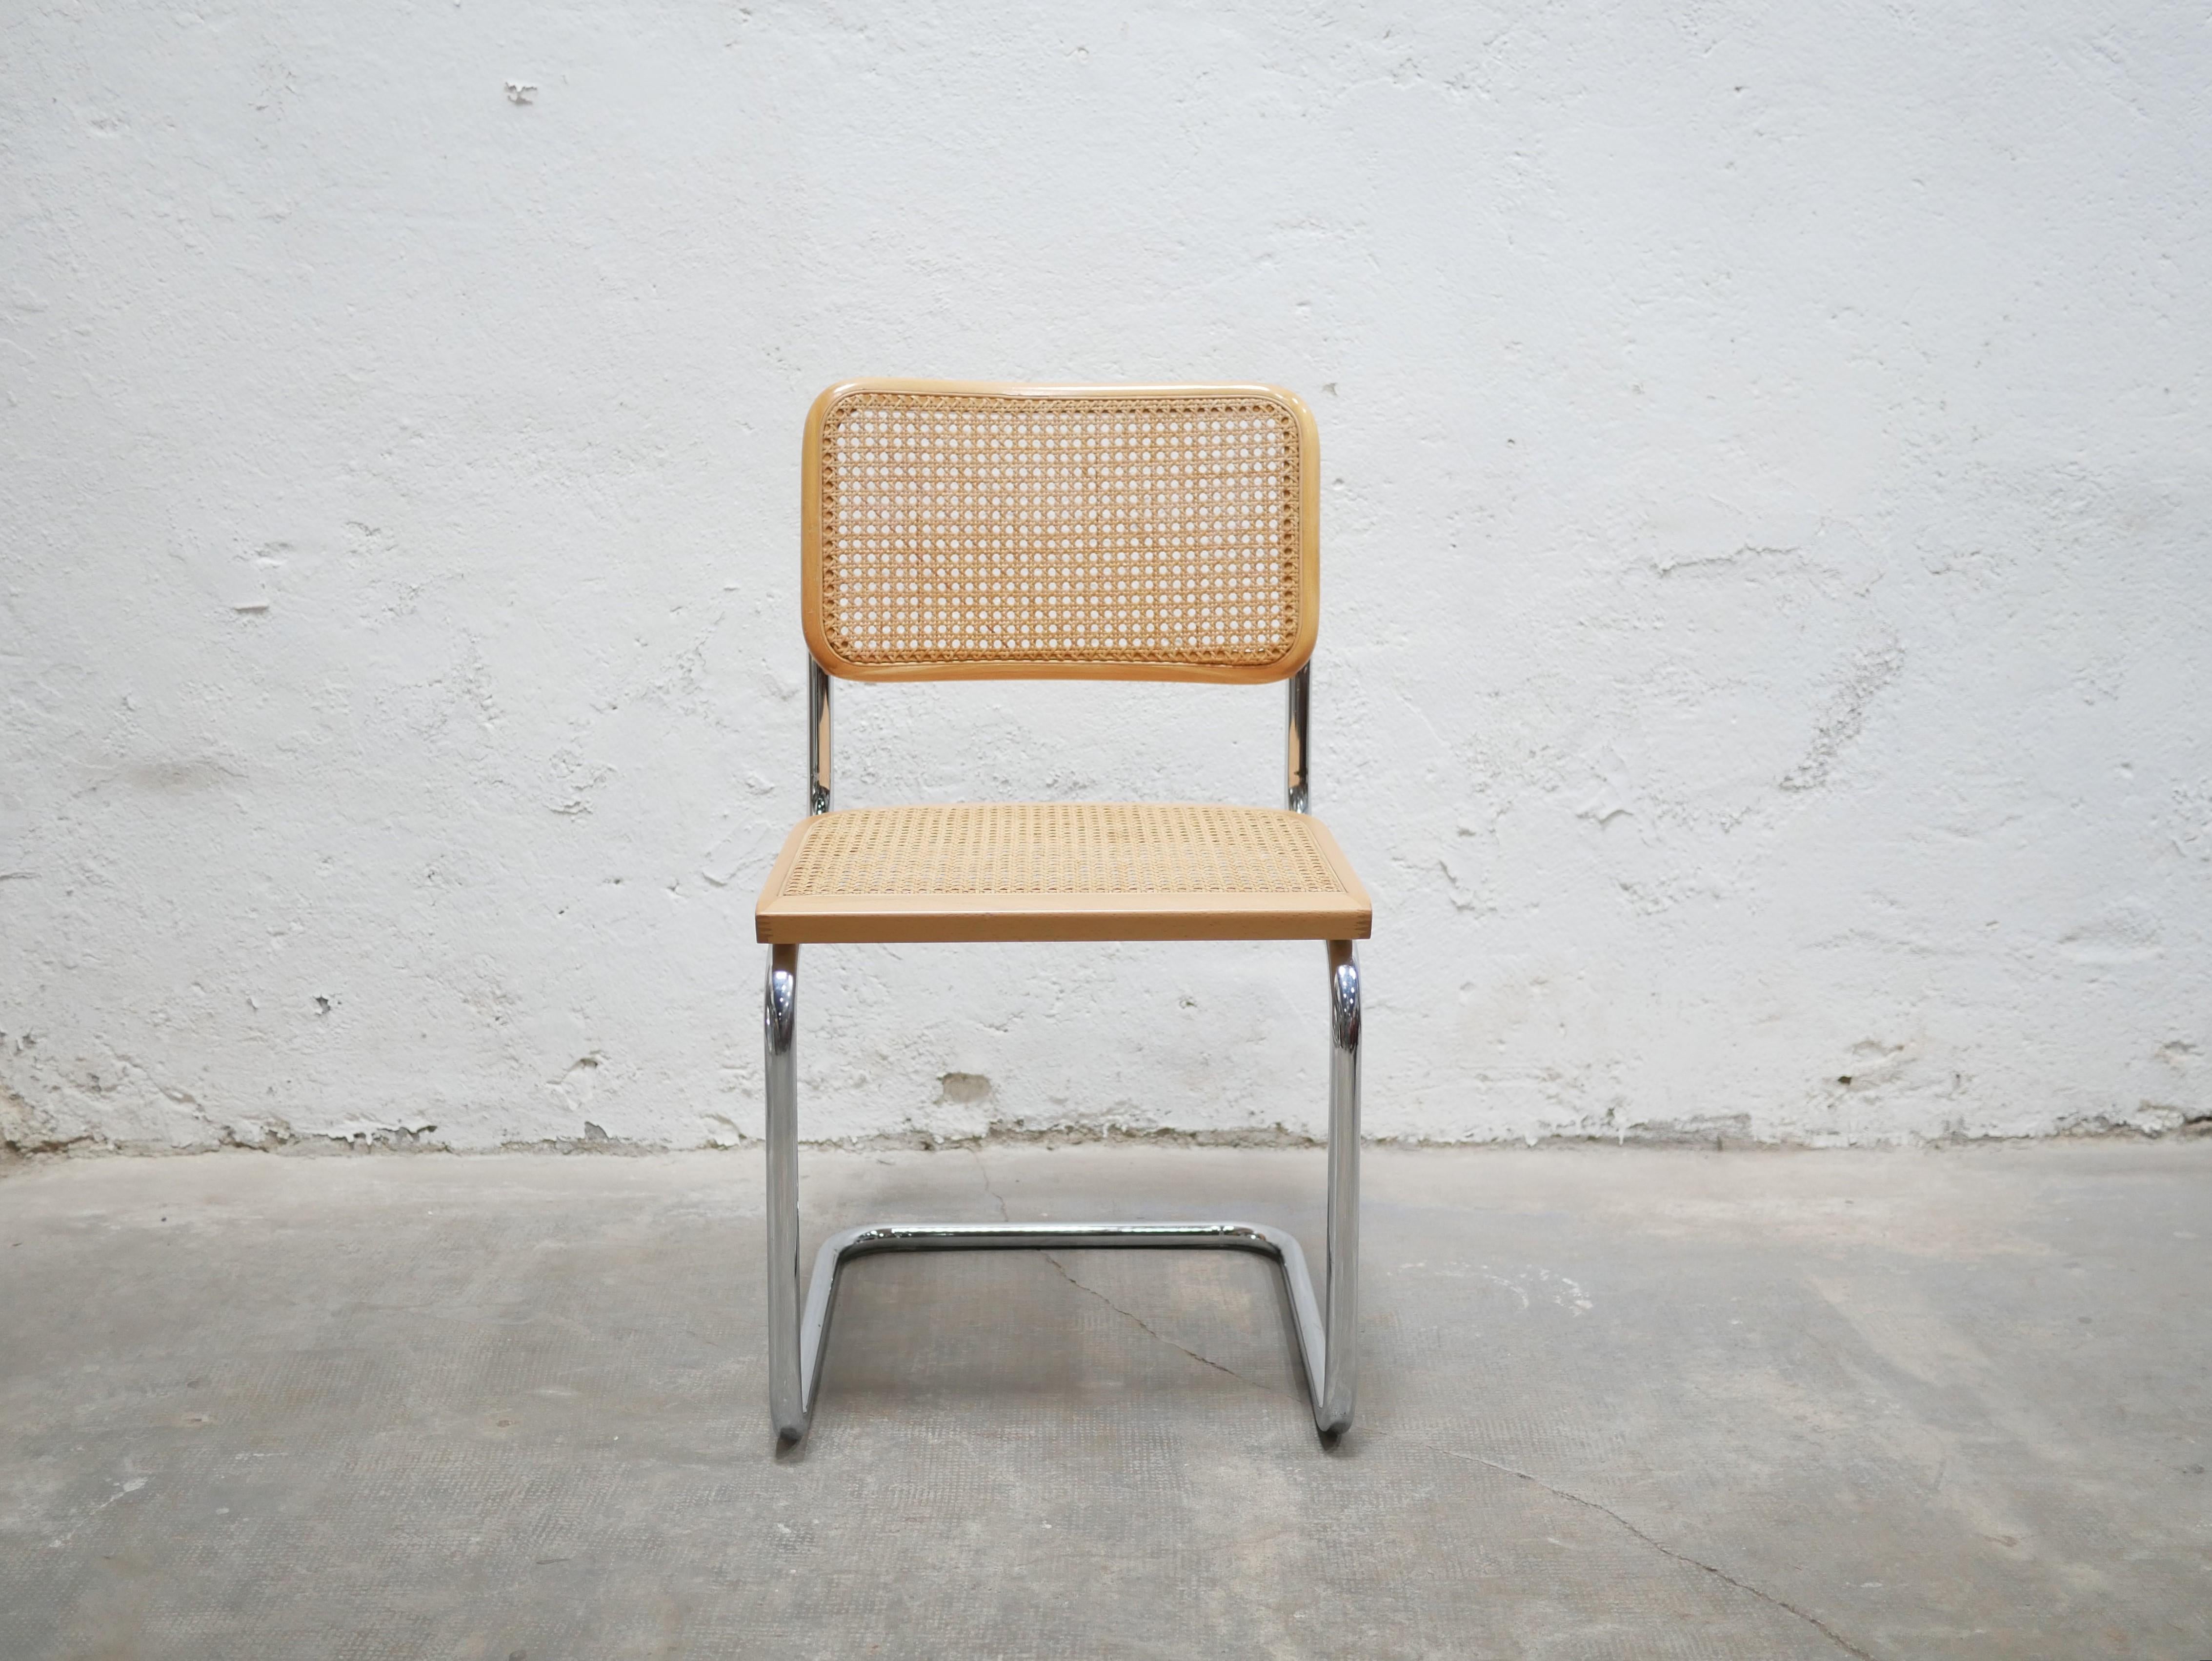 Chaise conçue par Marcel Breuer, modèle B32, datant des années 80.

Piétement tubulaire en acier chromé, assise et dossier cannés avec structure en bois naturel. Cette chaise est une pièce emblématique de l'histoire du modernisme et du Bauhaus.